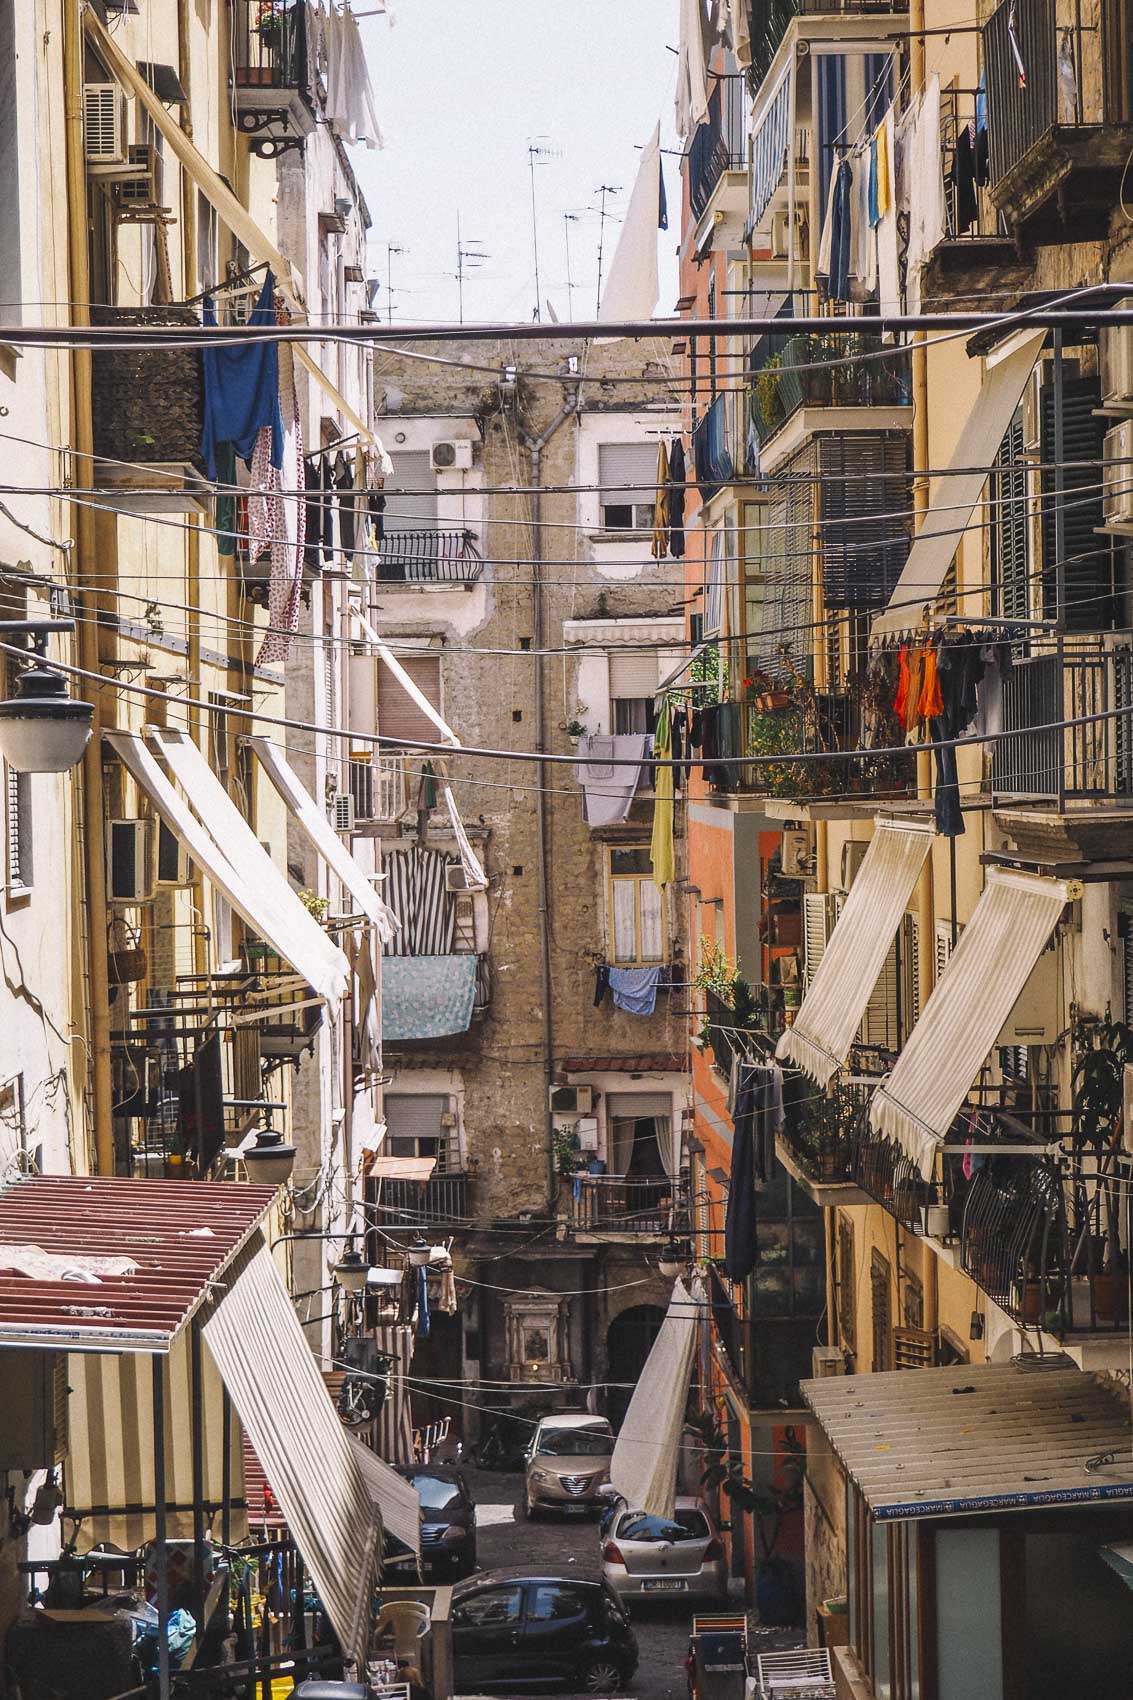 El quartiere spagnoli en Nápoles